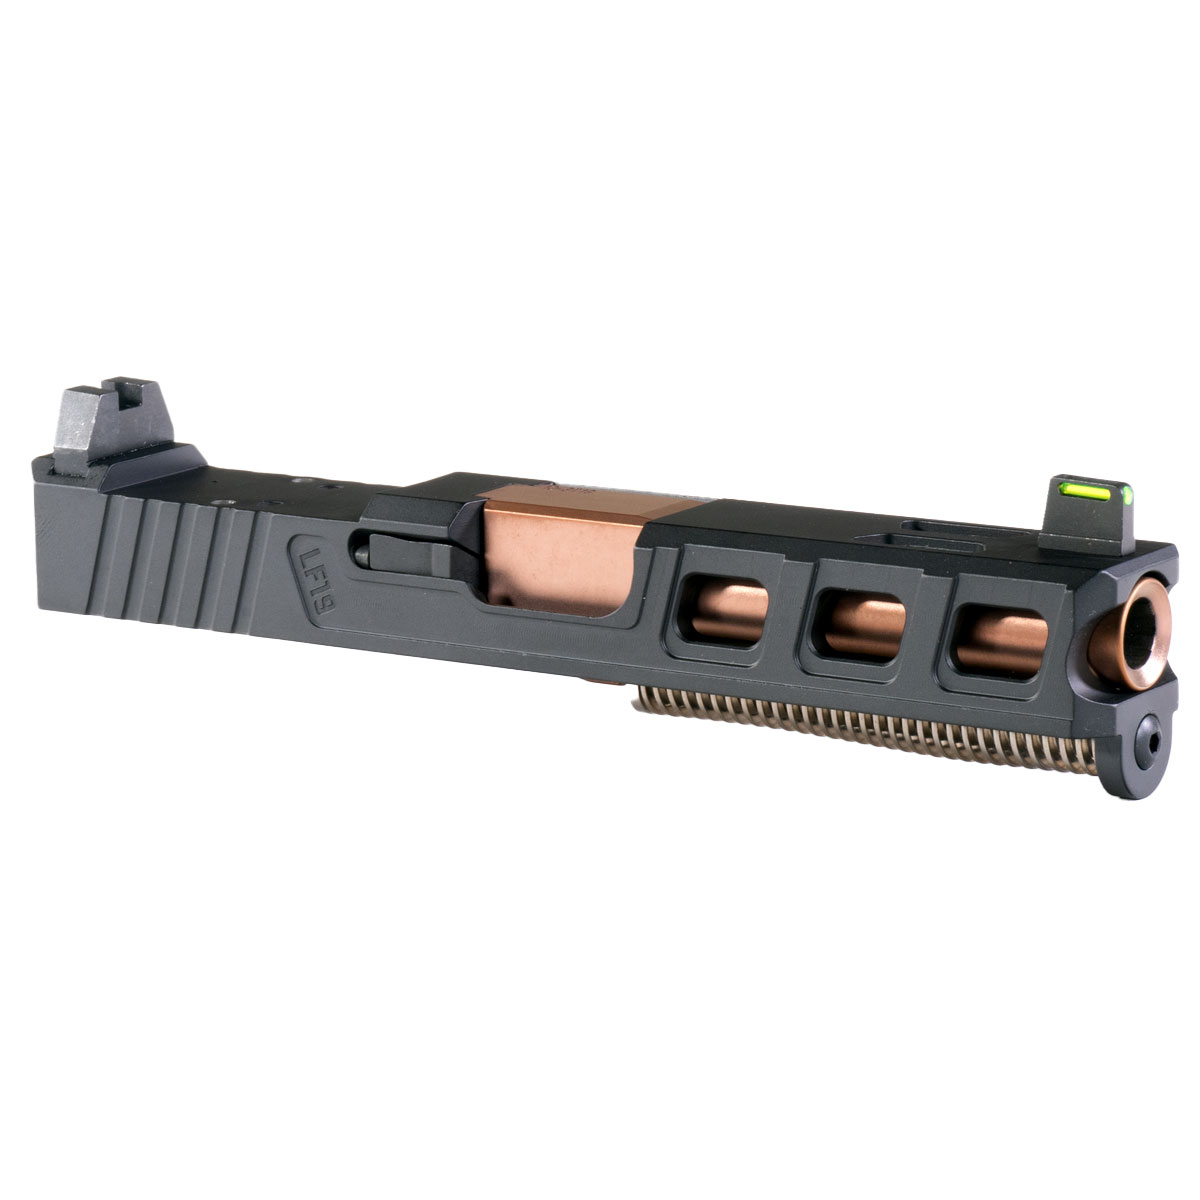 DTT 'Platinaire' 9mm Complete Slide Kit - Glock 19 Gen 1-3 Compatible
